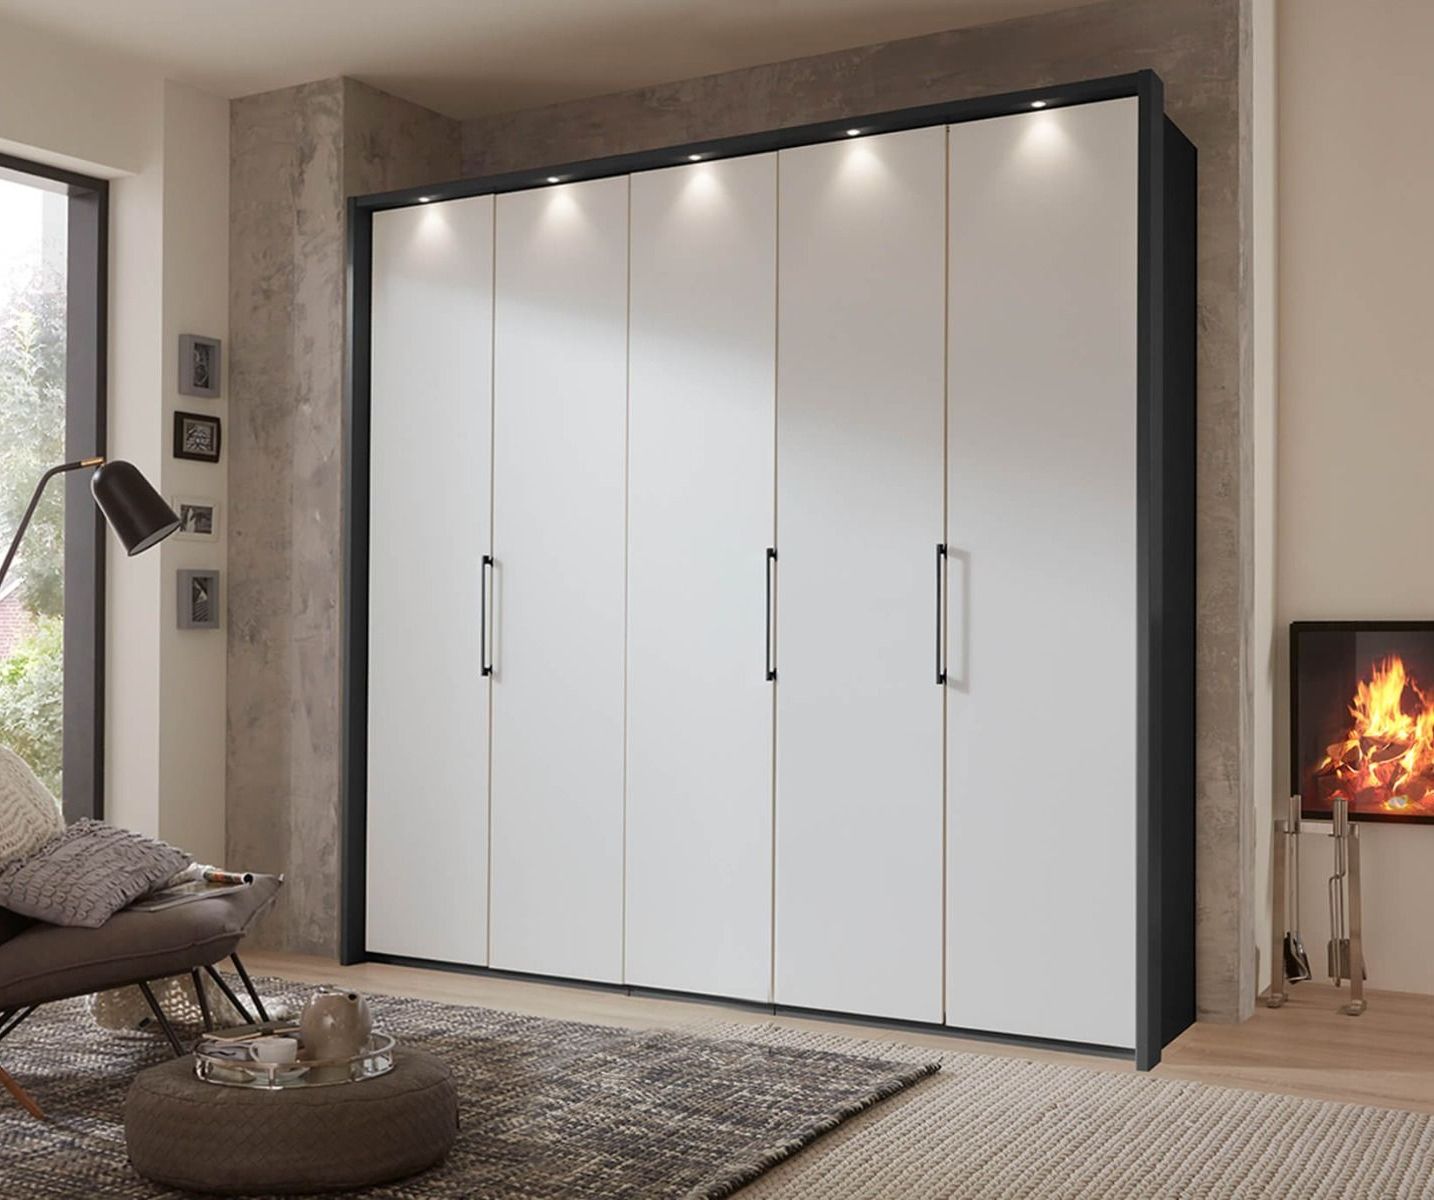 Wiemann Glasgow Pebble Grey Matt Glass 5 Door Hinged Wardrobe | Beds Direct  Uk Regarding 5 Door Wardrobes (View 12 of 20)